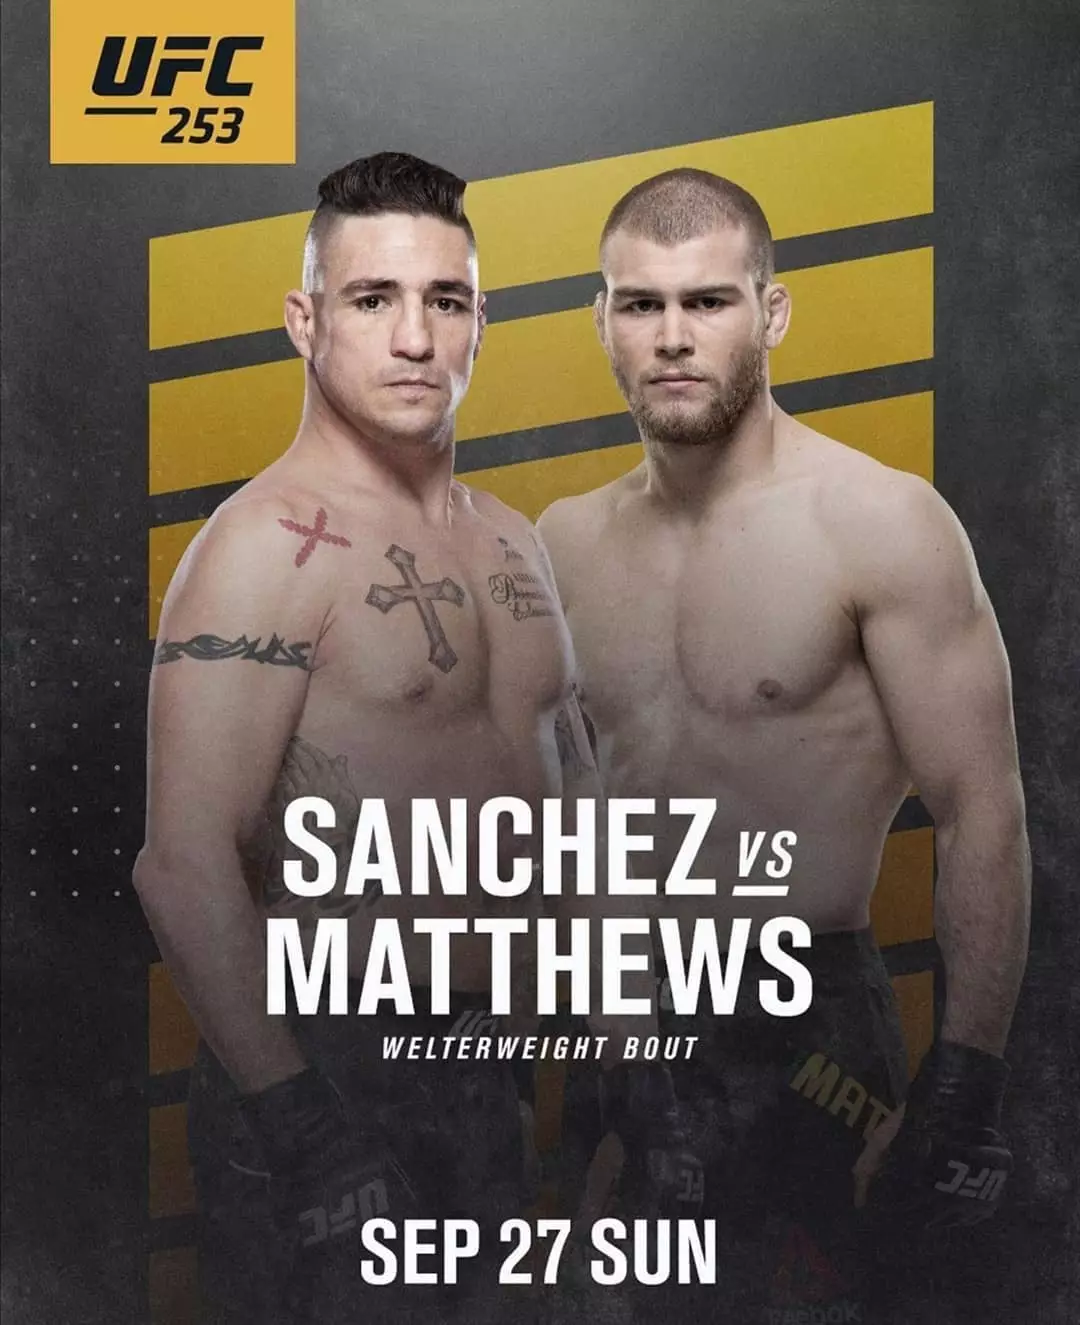 Jake Matthews takes on Diego Sanchez at UFC 253.